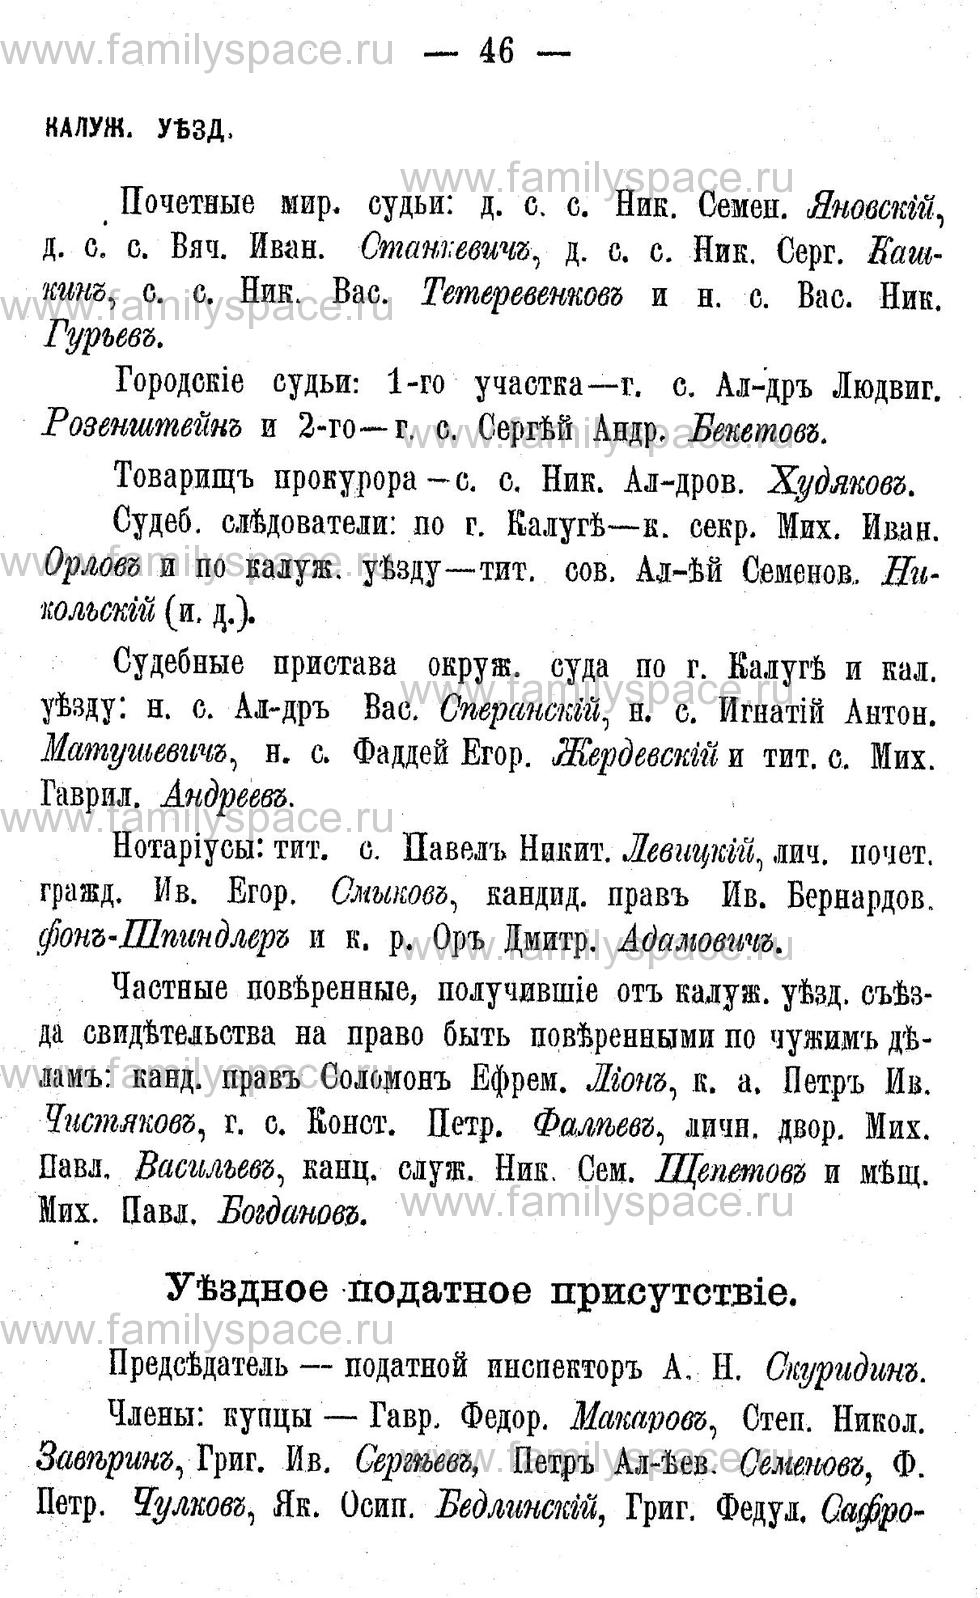 Поиск по фамилии - Адрес-календарь Калужской губернии на 1892 год, страница 2046